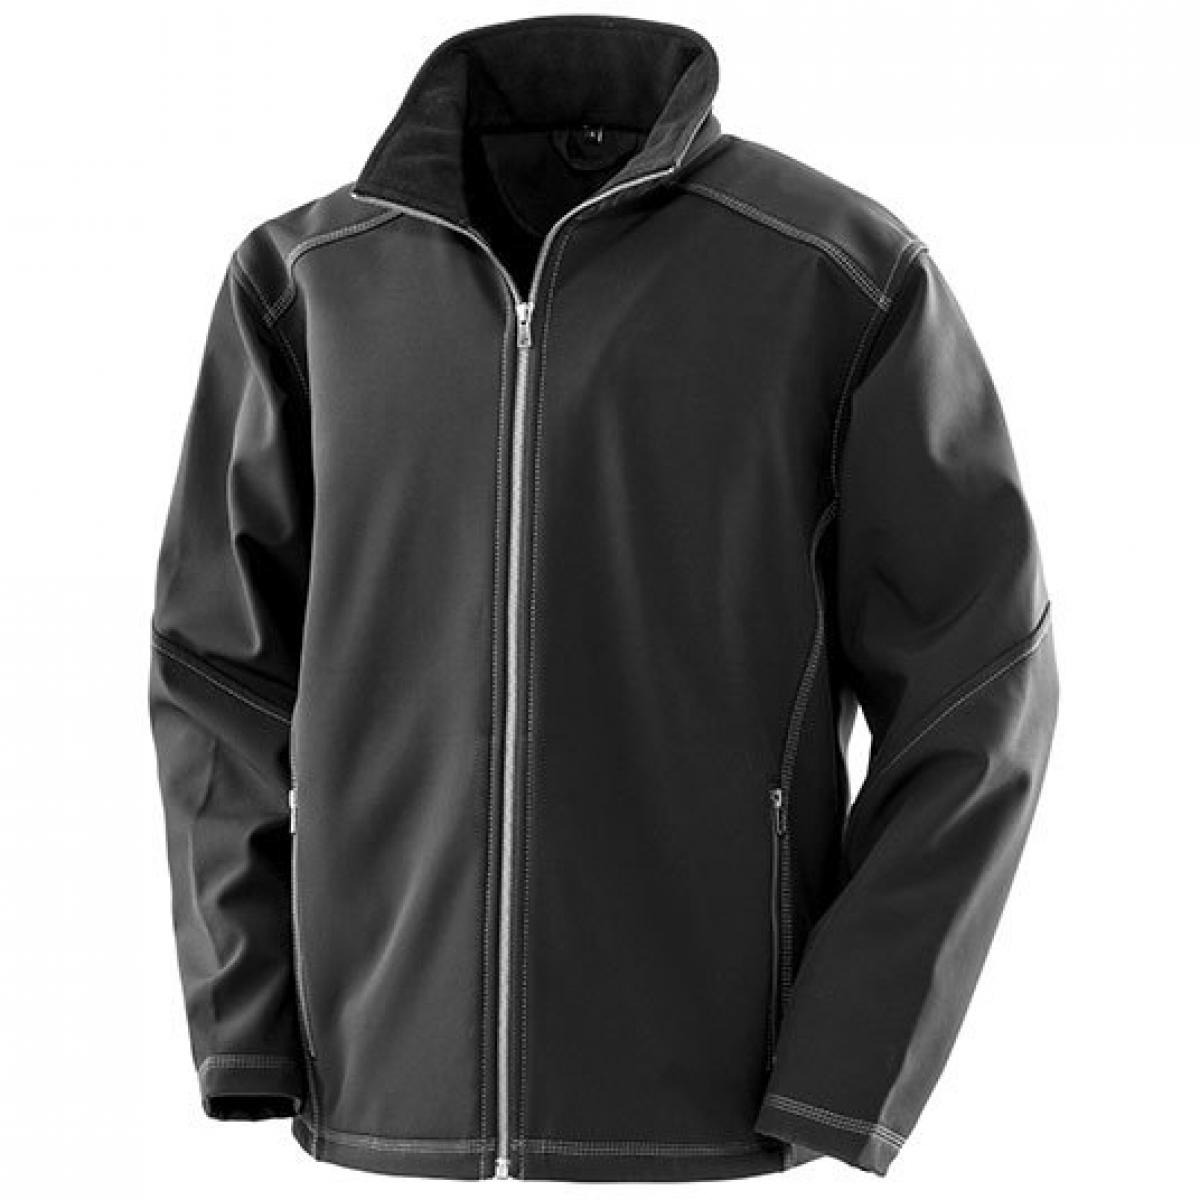 Hersteller: Result WORK-GUARD Herstellernummer: R455M Artikelbezeichnung: Herren Treble Stitch Softshell Jacket Farbe: Black